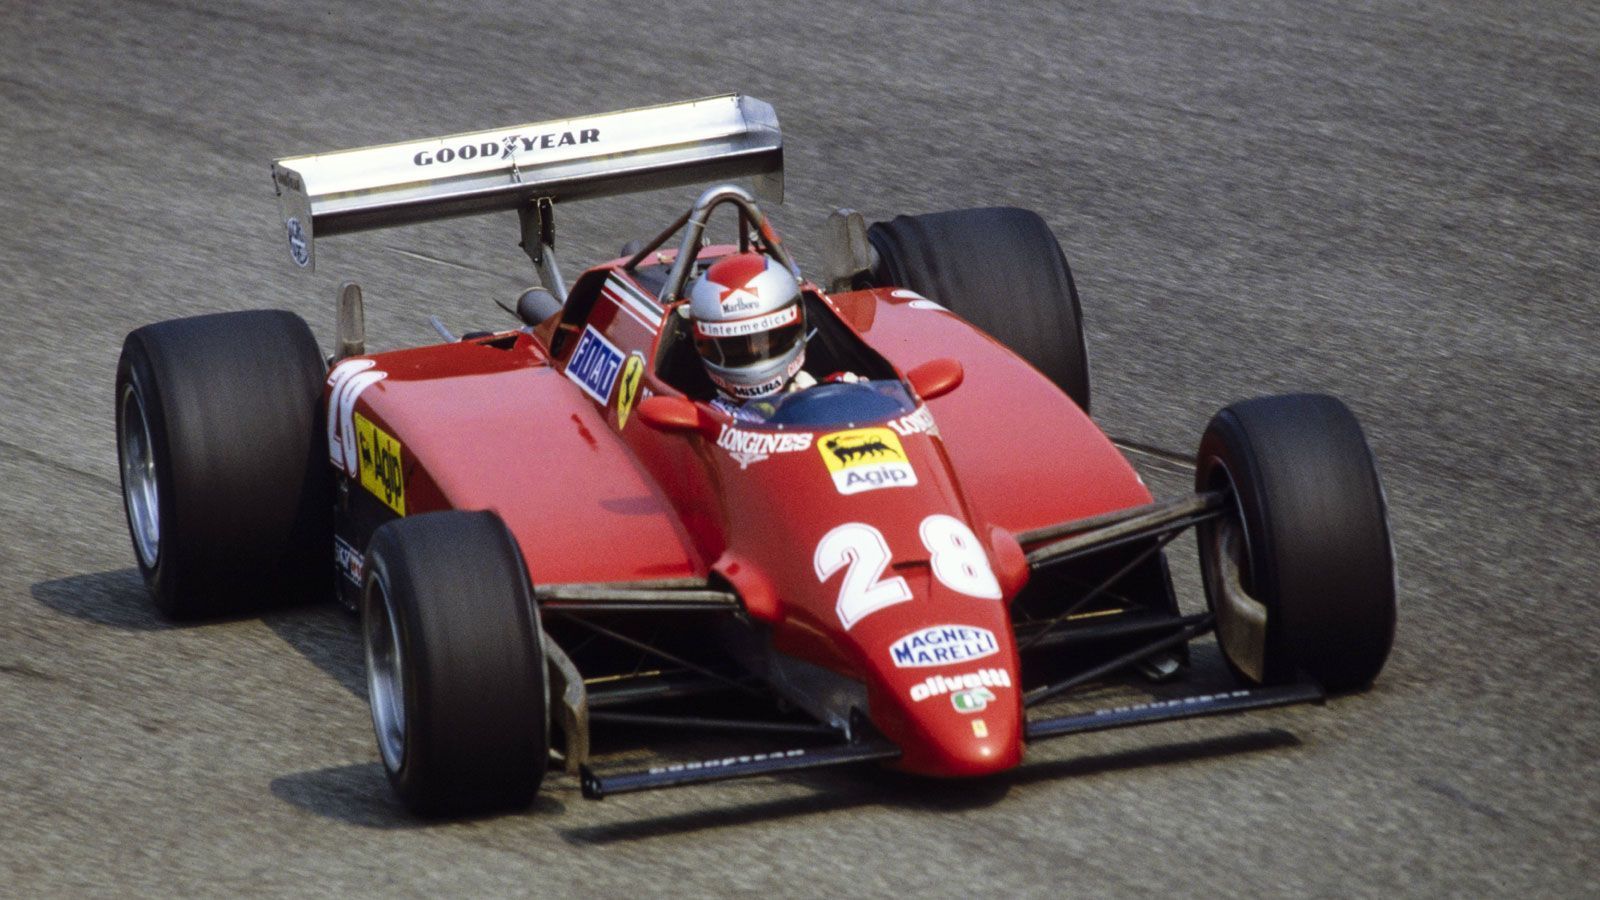 
                <strong>Mario Andretti (Ferrai) - 1982</strong><br>
                Im zarten Alter von 42 Jahren kehrt der Weltmeister von 1978 hinter das Steuer eines Formel 1-Wagen zurück. Nachdem sich Didier Pironi bei einem schweren Unfall am Hockenheimring verletzt, verpflichtet Ferrari Andretti für das Heimspiel in Monza. Im Qualifying platziert der US-Amerikaner seinen Wagen sensationell auf dem ersten Platz, im Rennen fällt er durch ein Motorproblem auf Rang drei zurück. Beim darauffolgenden Grand Prix in Las Vegas muss Andretti vorzeitig aufgeben und beendet danach seine Karriere in der Formel 1. Dem Rennsport bleibt Andretti durch Teilnahmen am Indianapolis 500 und den 24 Stunden von Le Mans in den folgenden Jahren weiterhin treu.
              